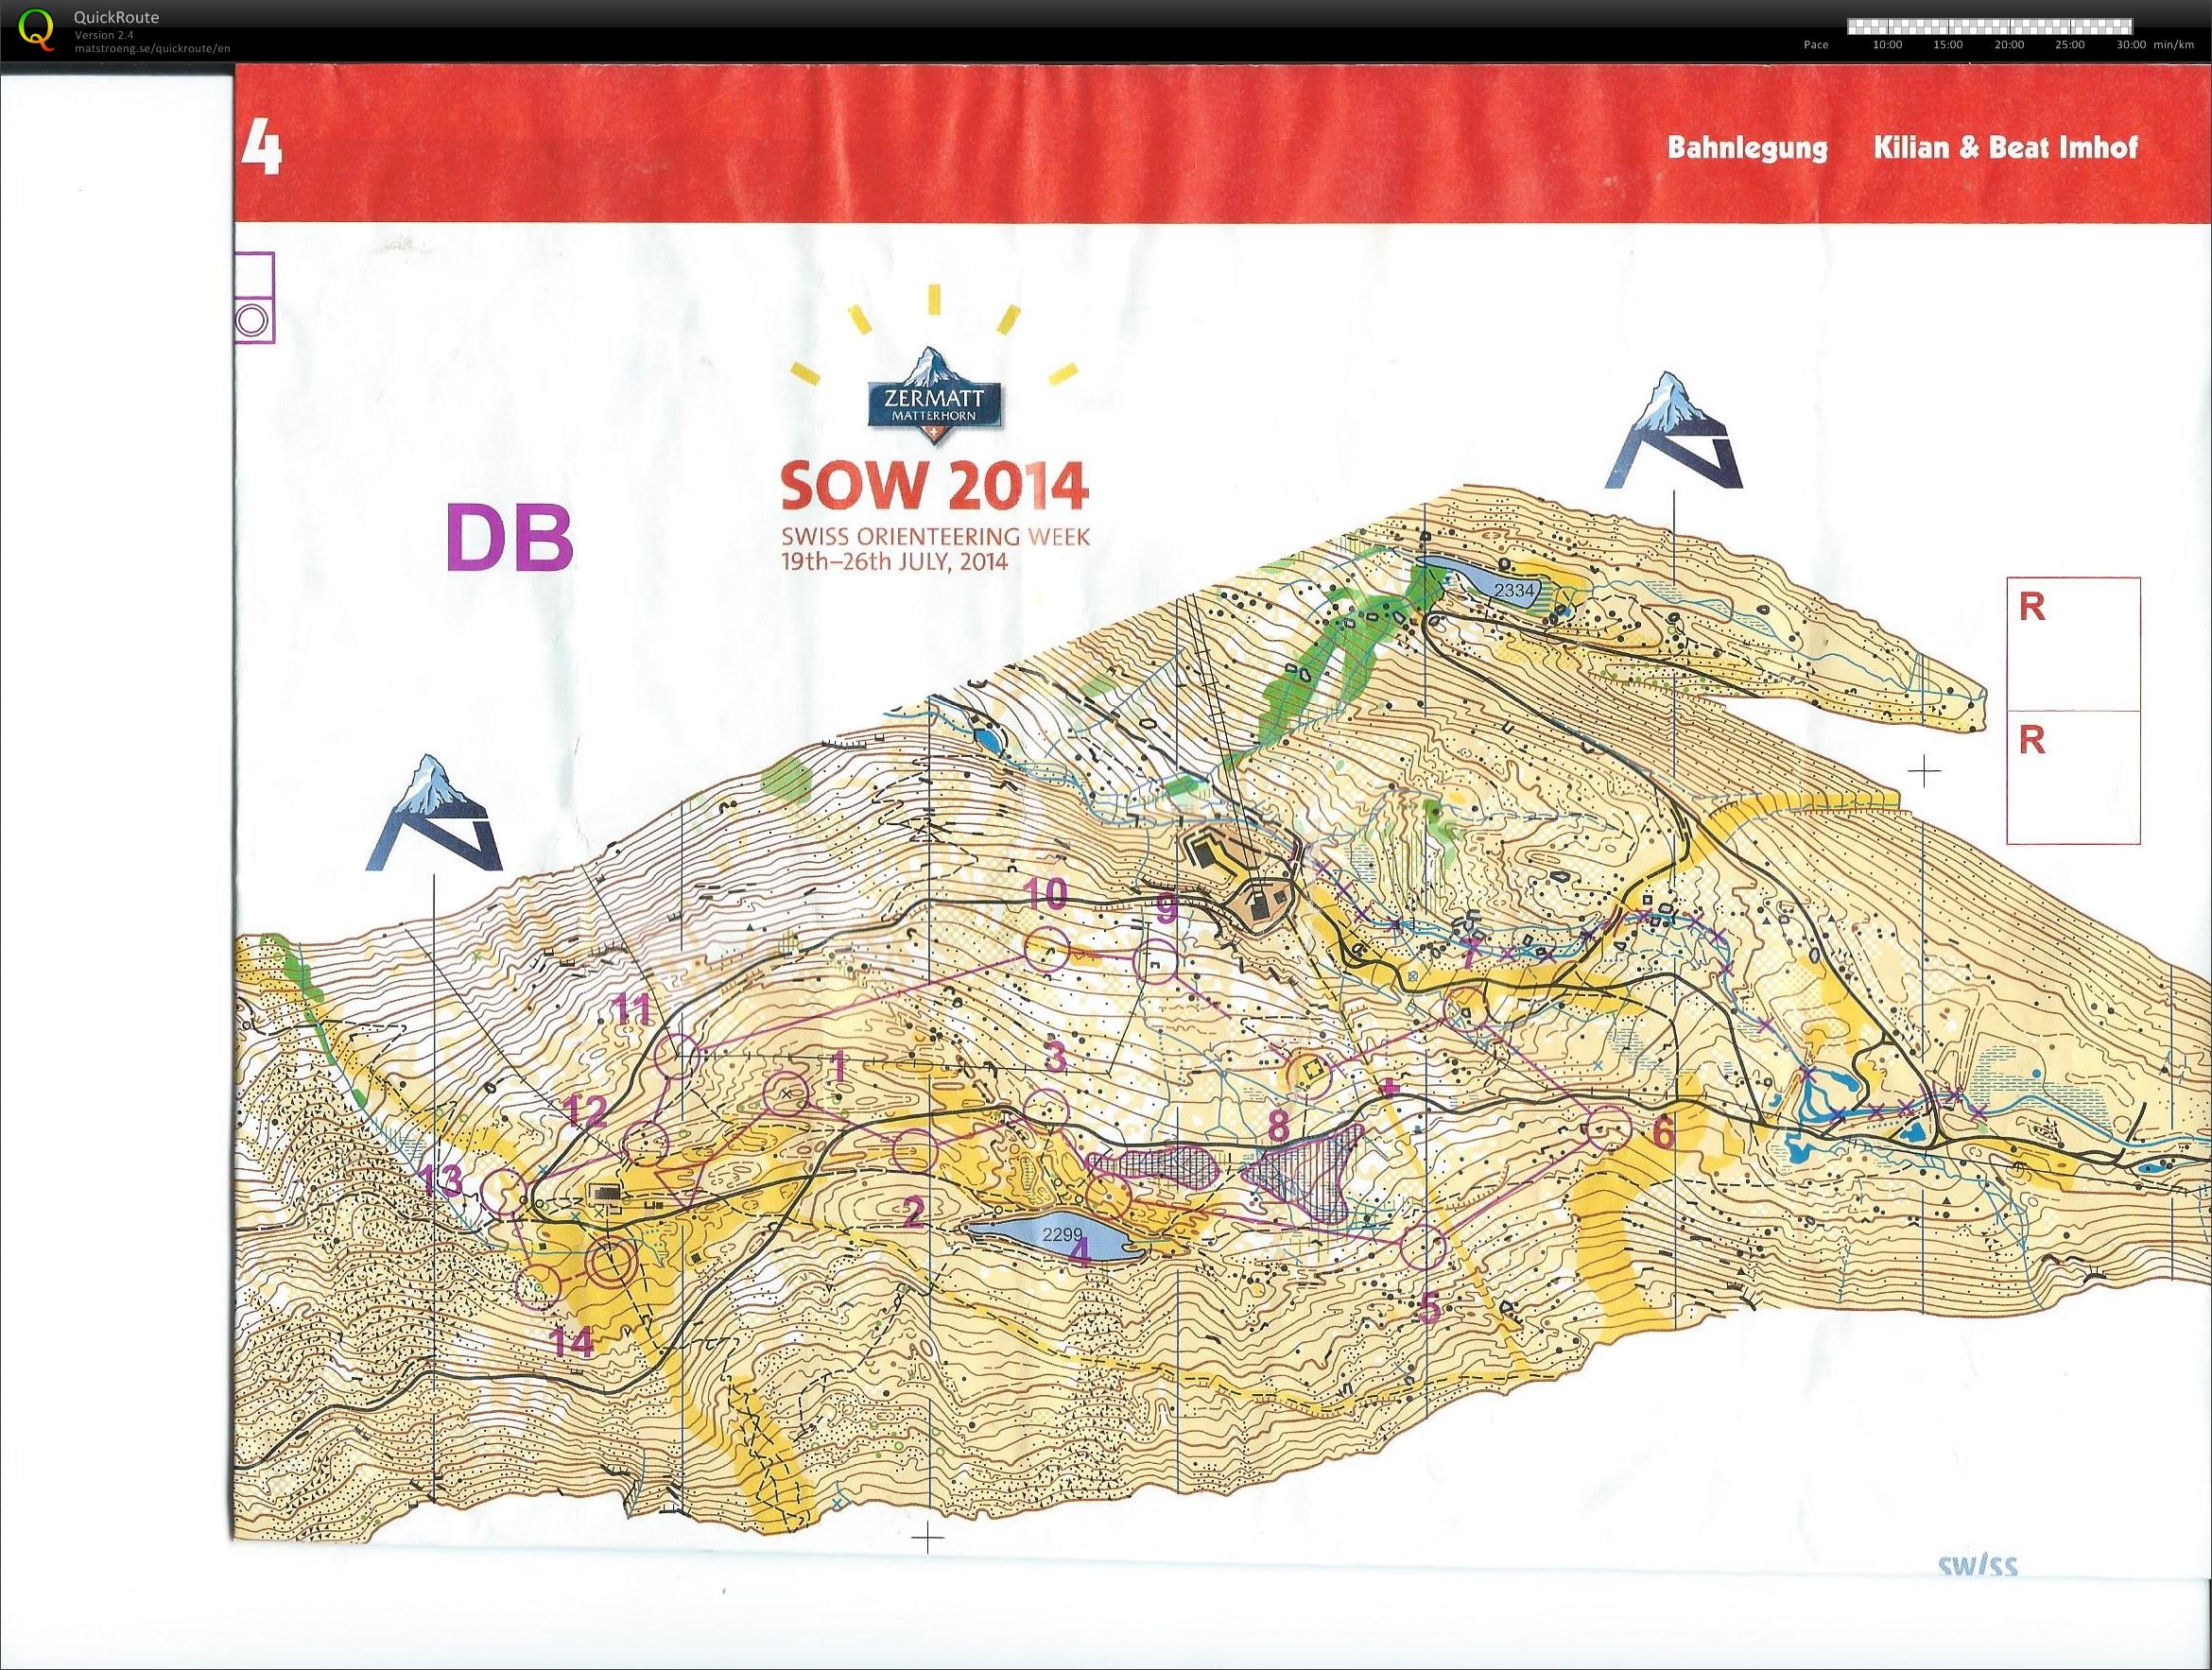 Swiss O-week etape 4 (24/07/2014)